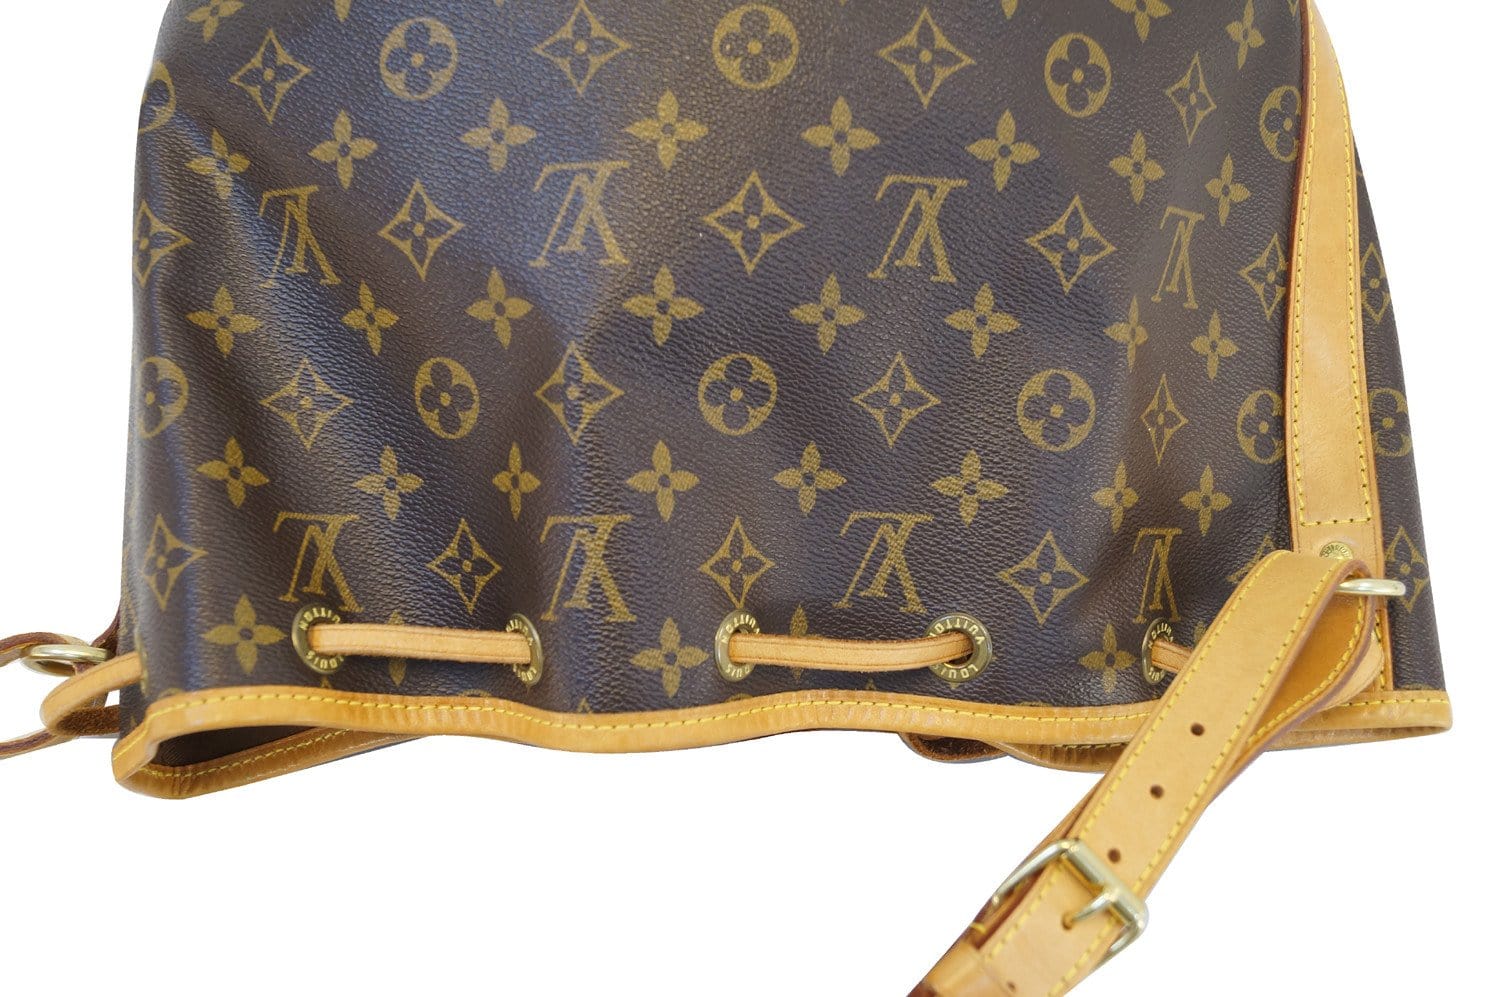 Authentic LOUIS VUITTON Petit Noe Monogram Shoulder Tote Bag Purse #51324